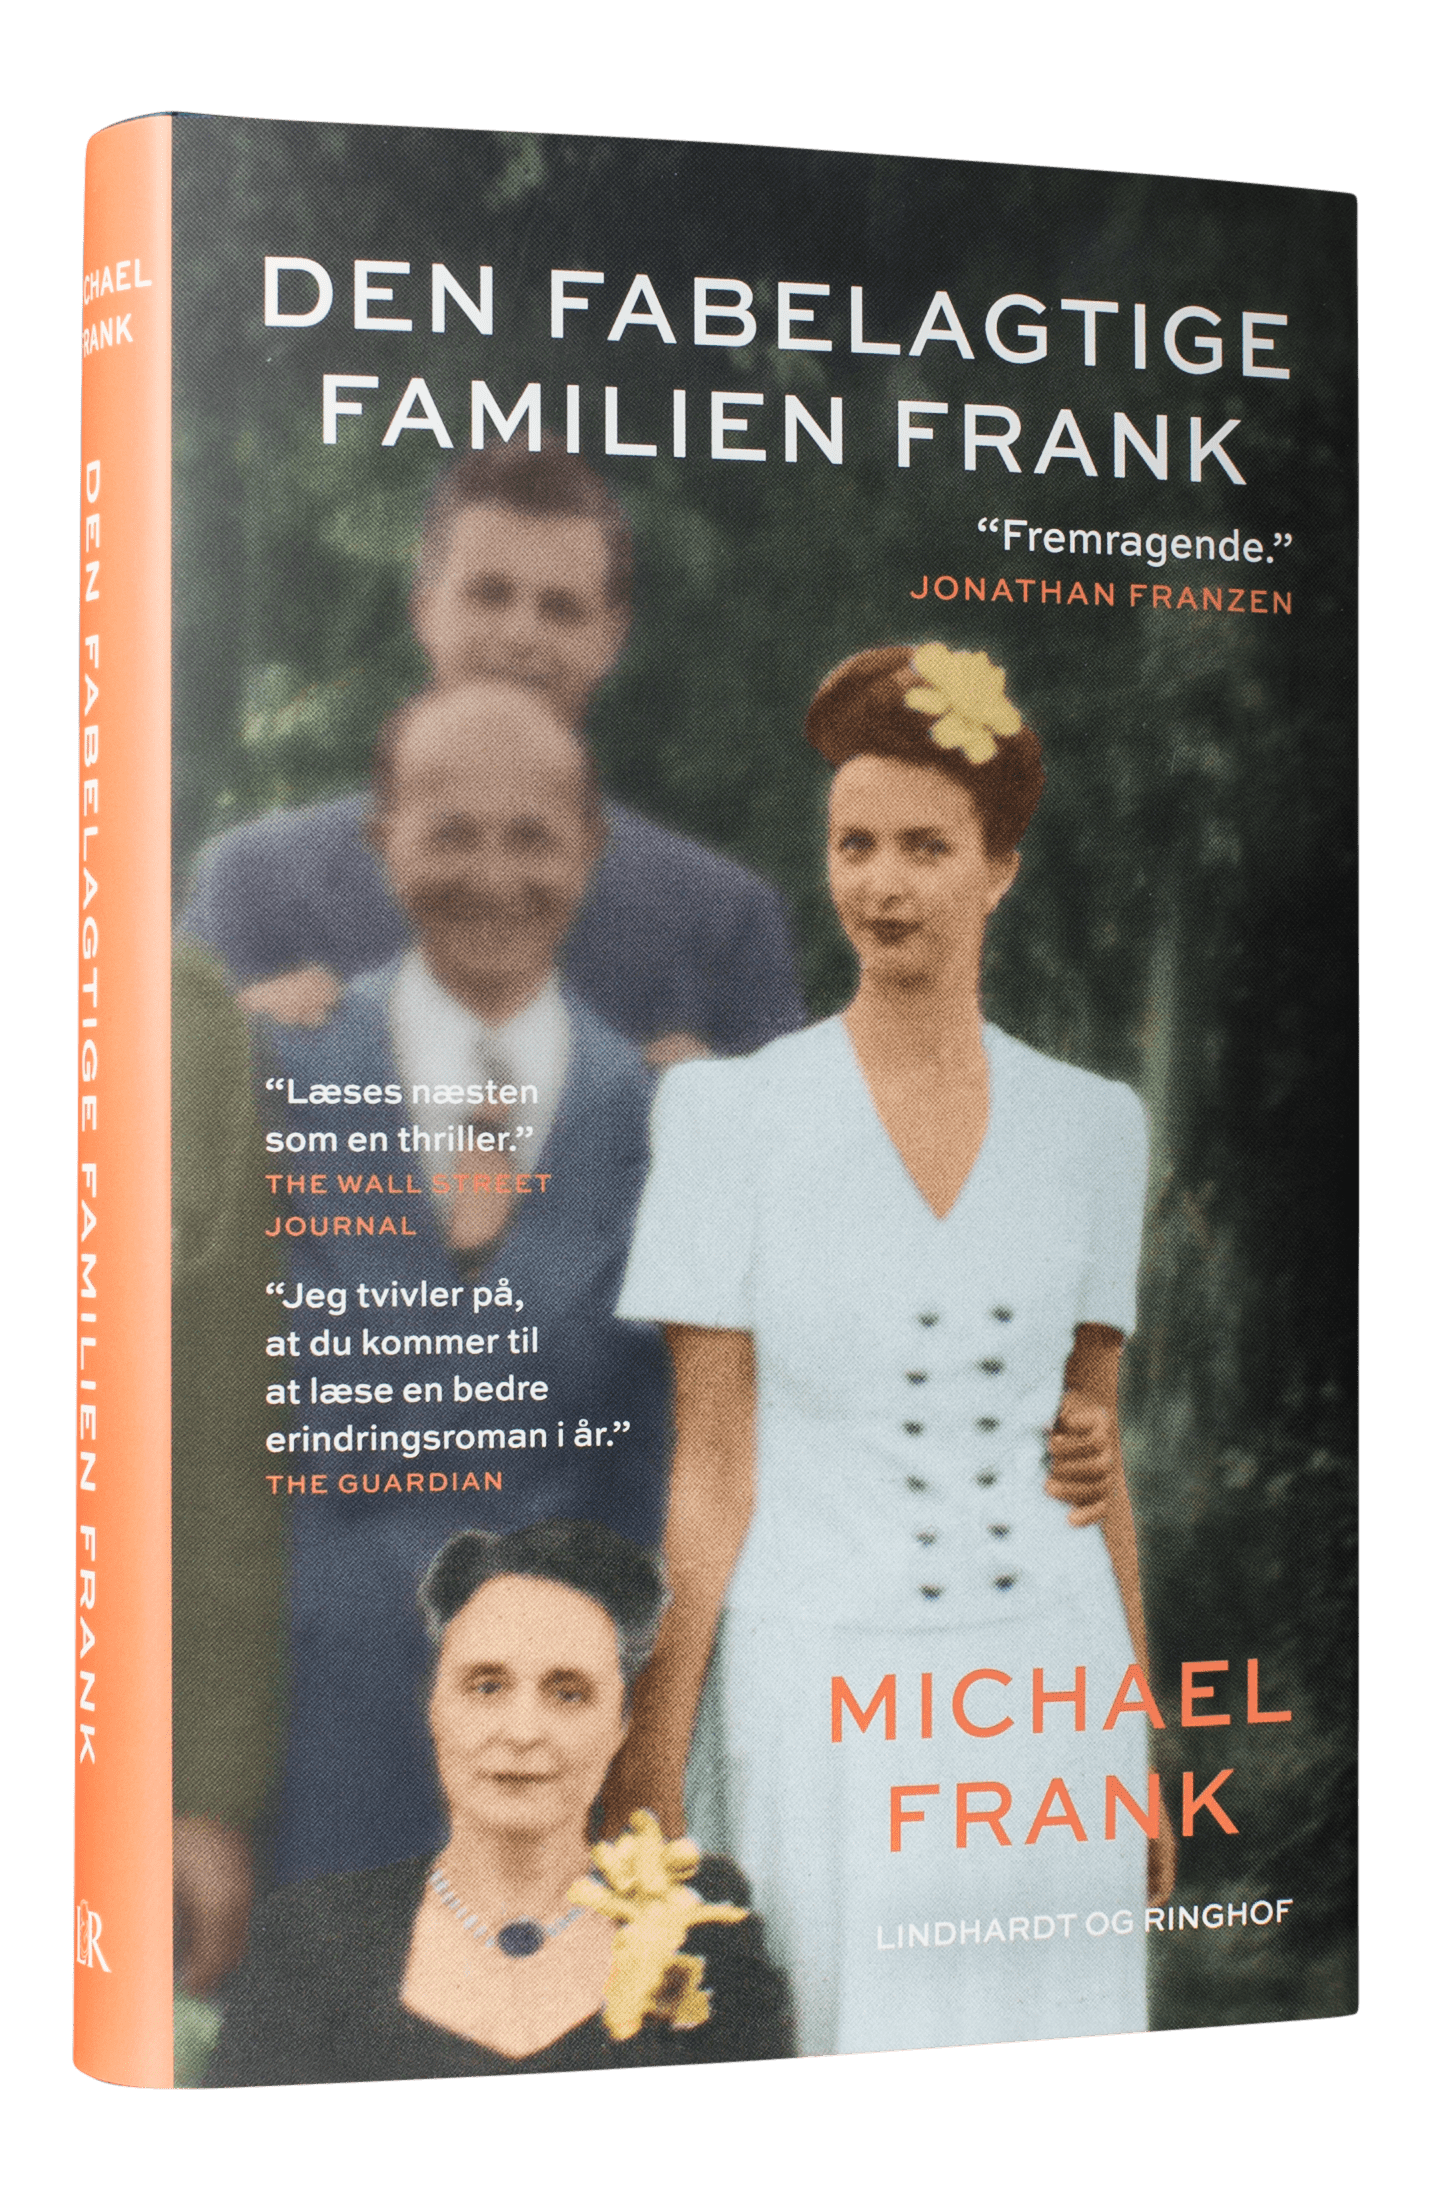 Den fabelagtige familien Frank, dannelsesroman, memoir, Michael Frank